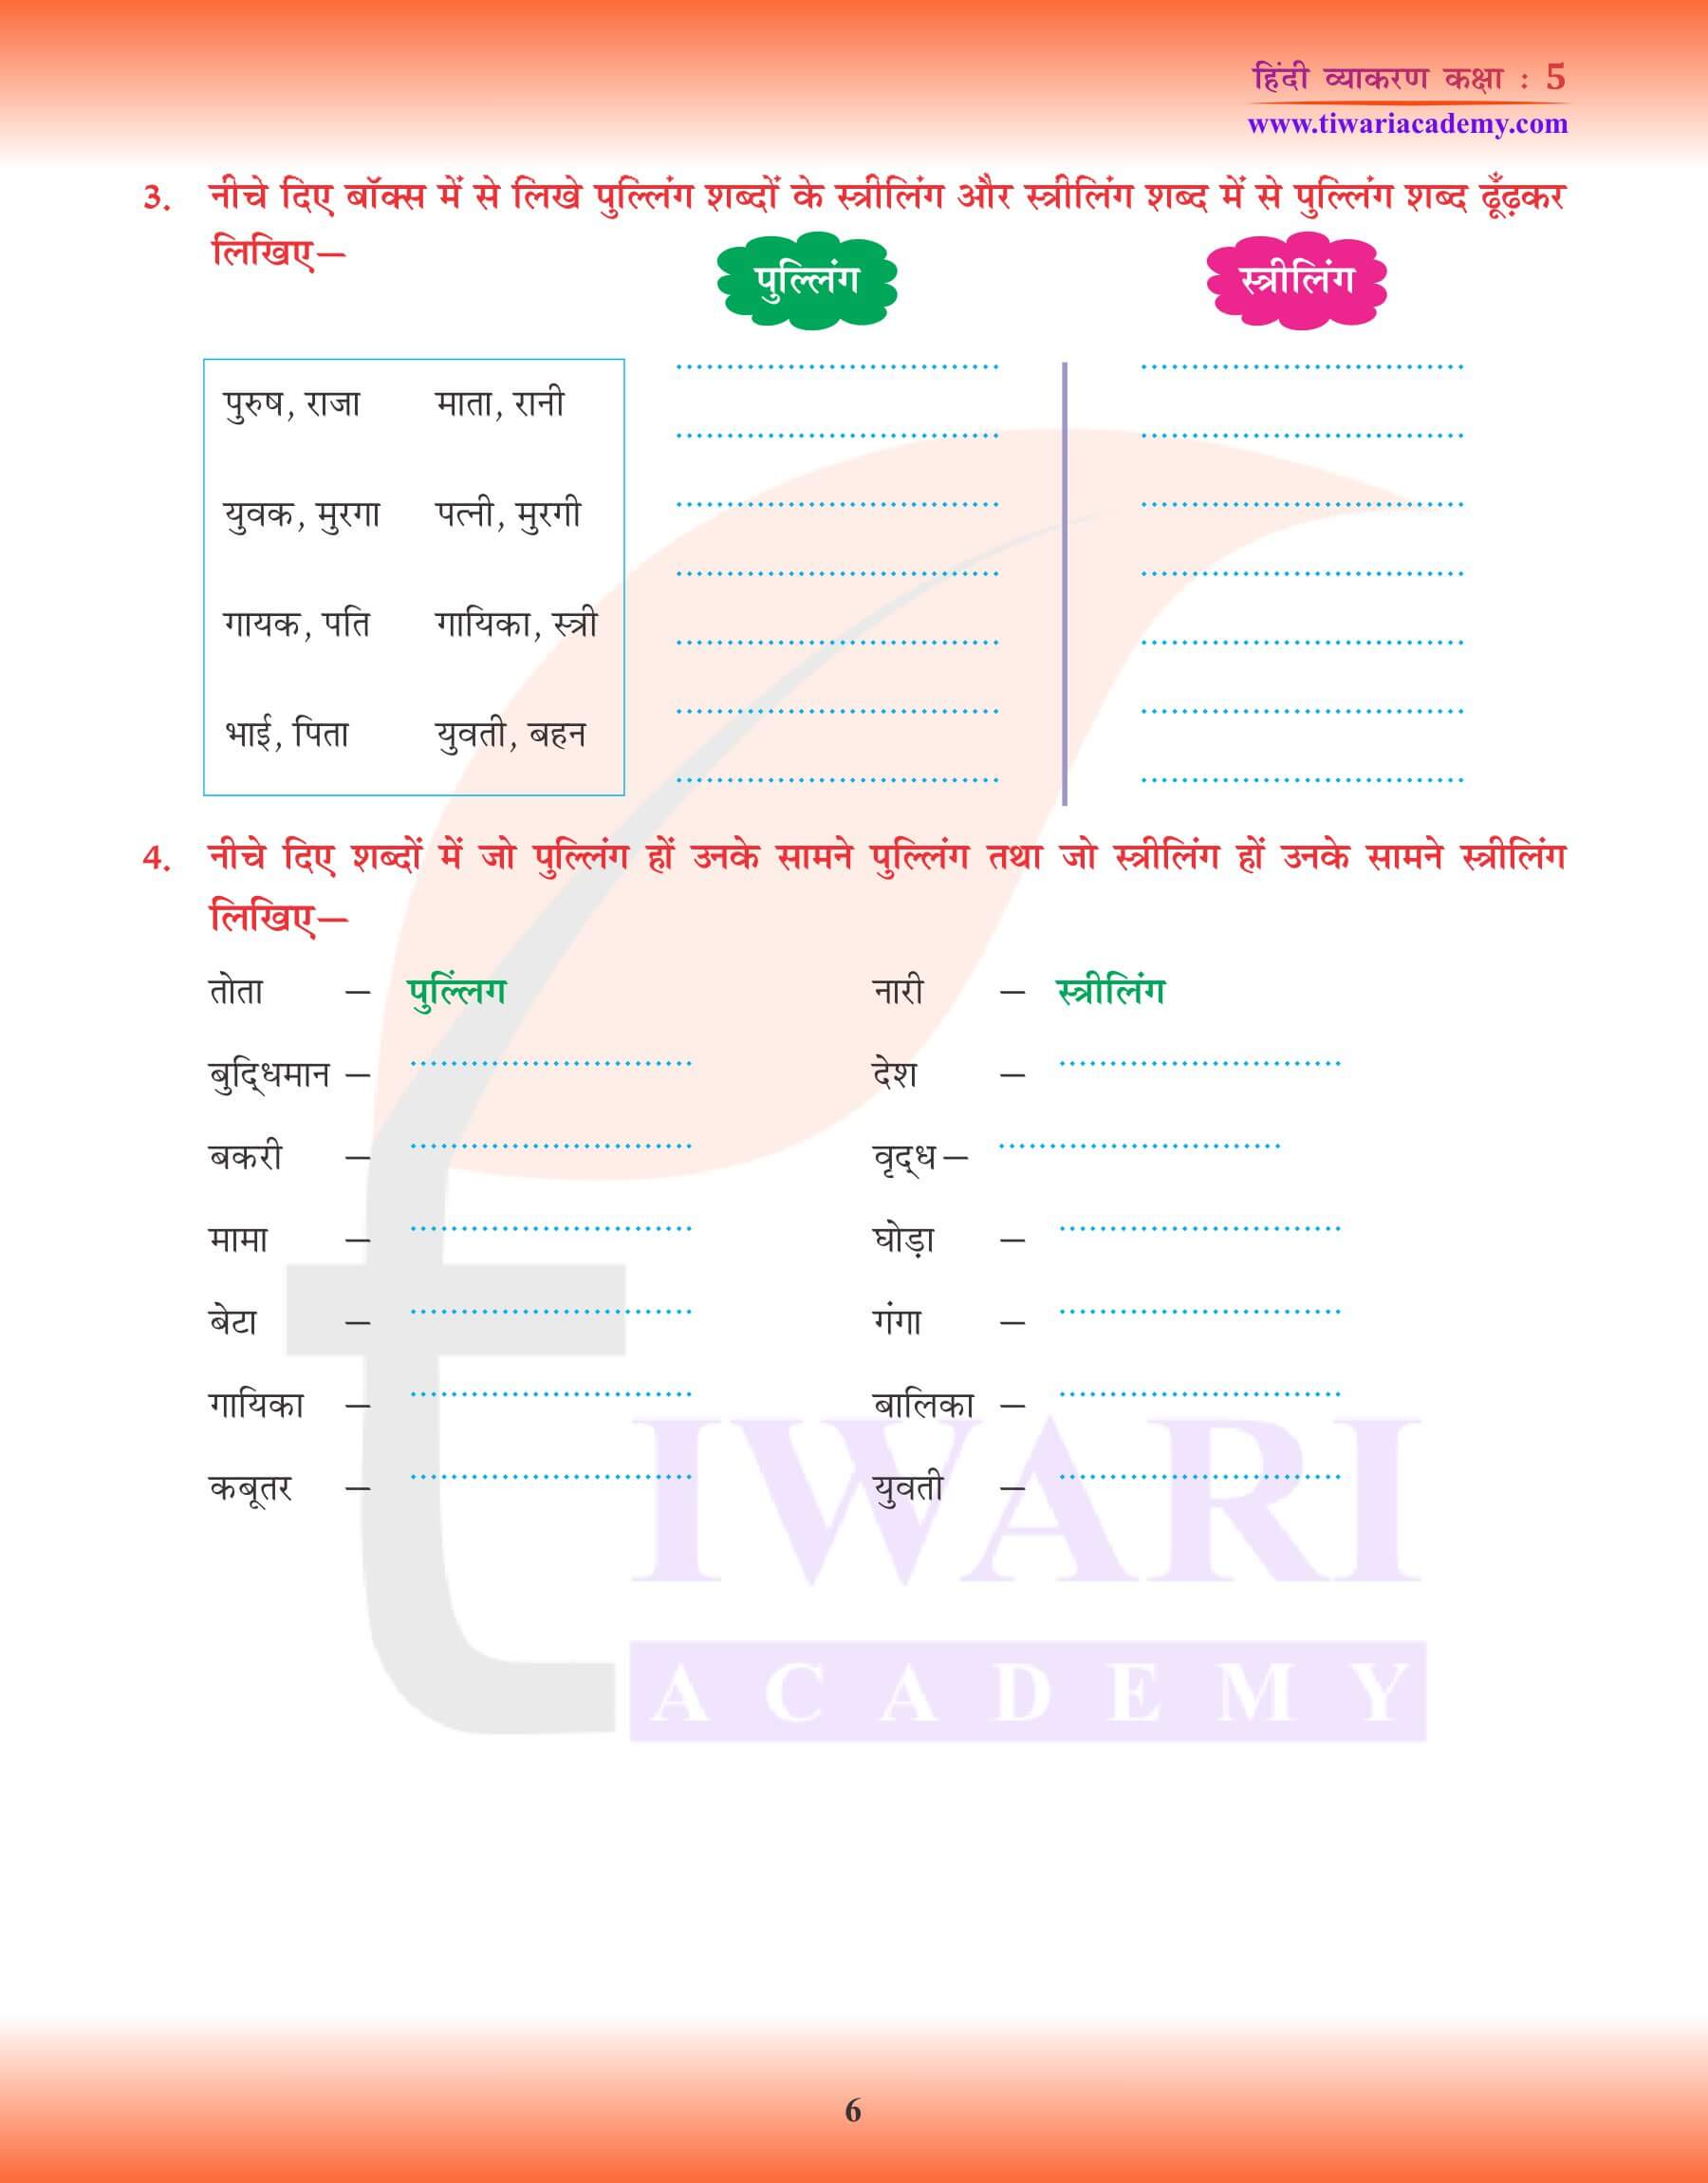 कक्षा 5 हिंदी व्याकरण वचन और कारक के उदाहरण